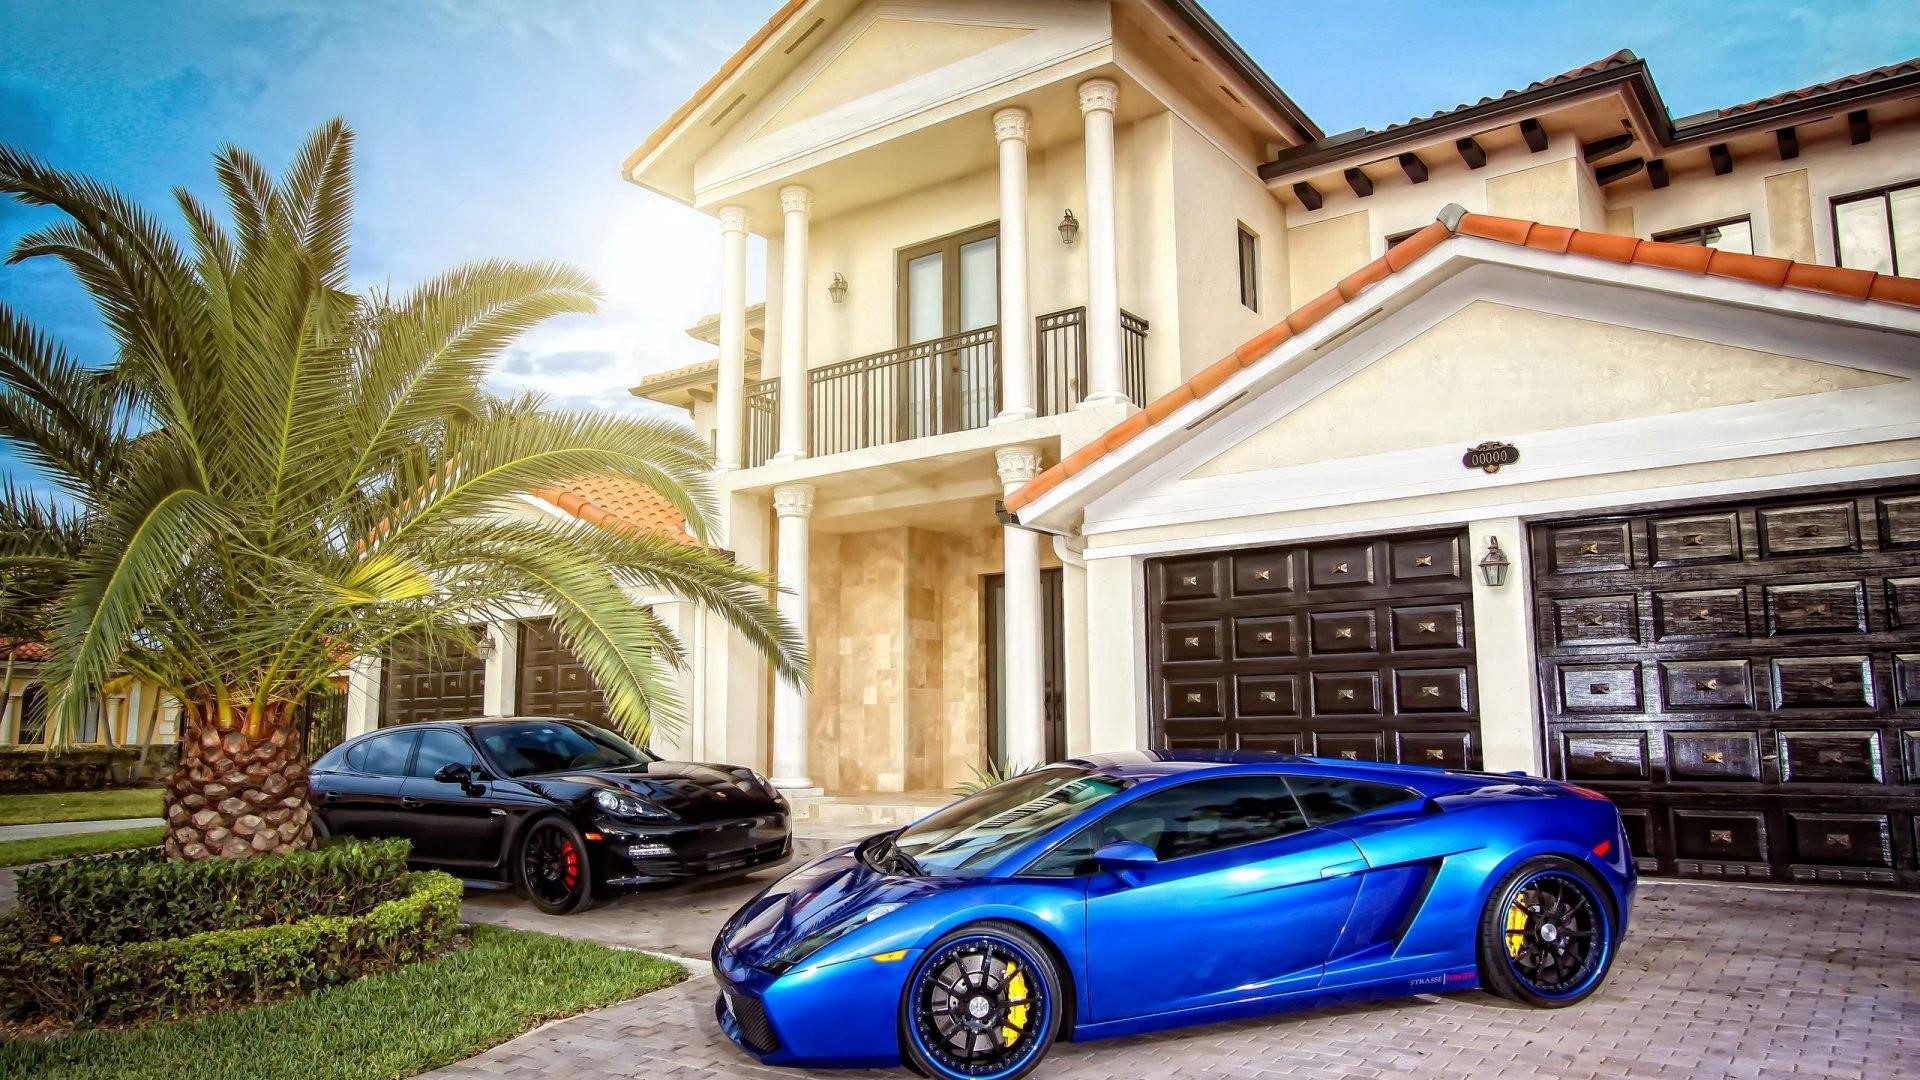 Blue Lamborghini Mansion Hd Car Photos - Big House And Car - 1920x1080  Wallpaper 